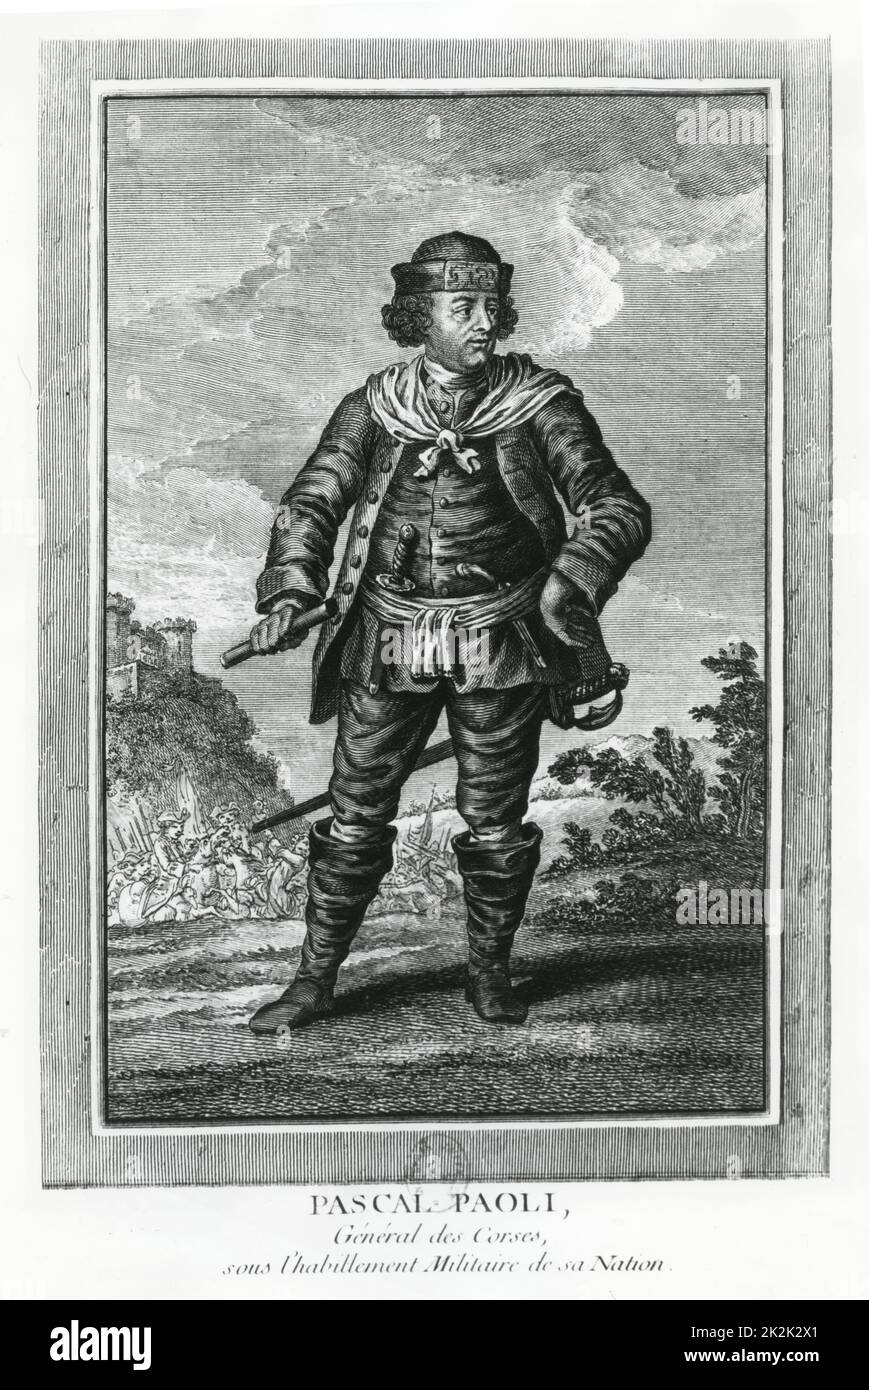 Retrato de Pascal Paoli, general de las corsas, con el uniforme militar usado durante la guerra de independencia corsa. Grabado del siglo 18th Foto de stock